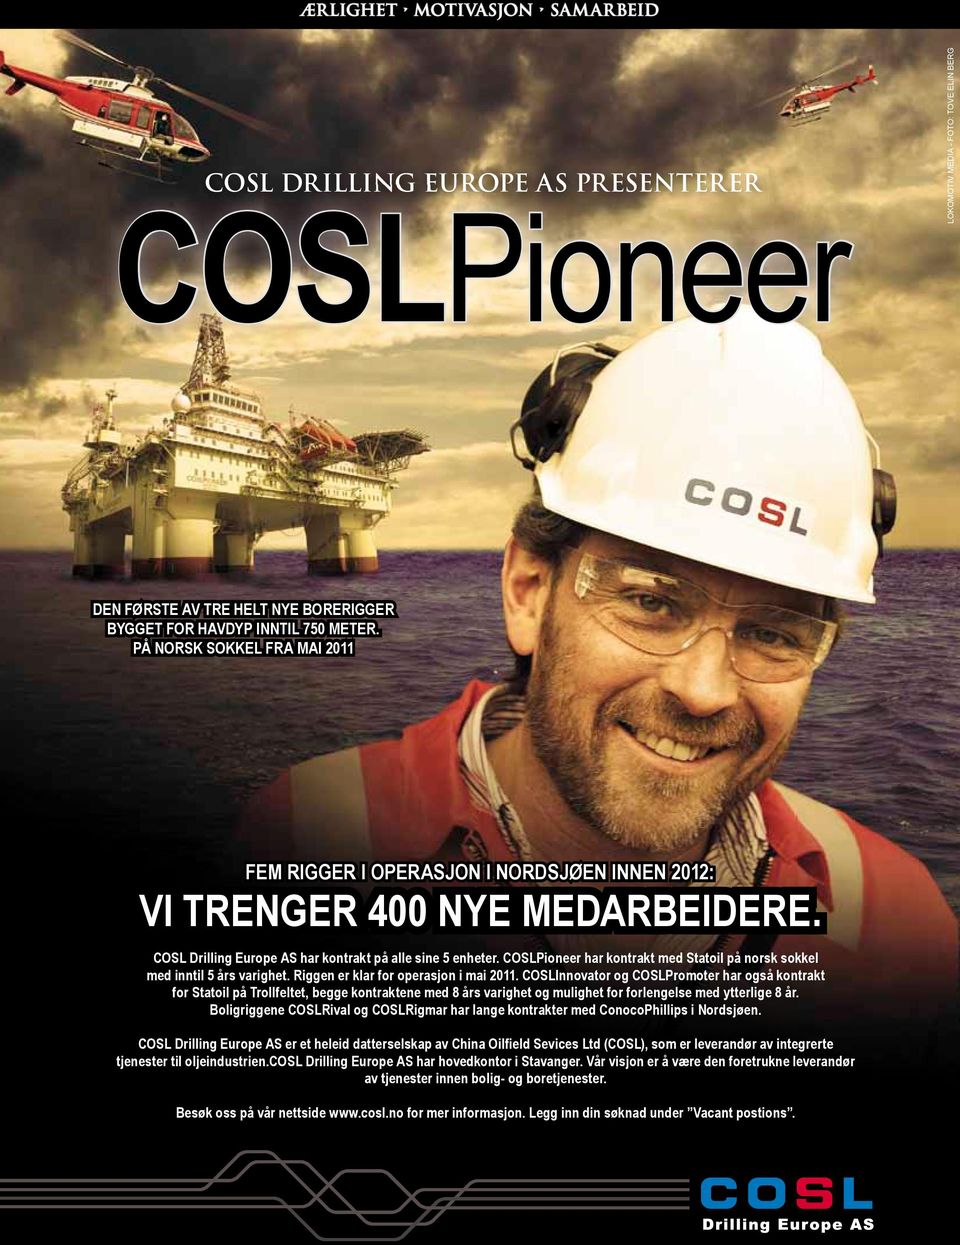 COSLPioneer har kontrakt med Statoil på norsk sokkel med inntil 5 års varighet. Riggen er klar for operasjon i mai 2011.